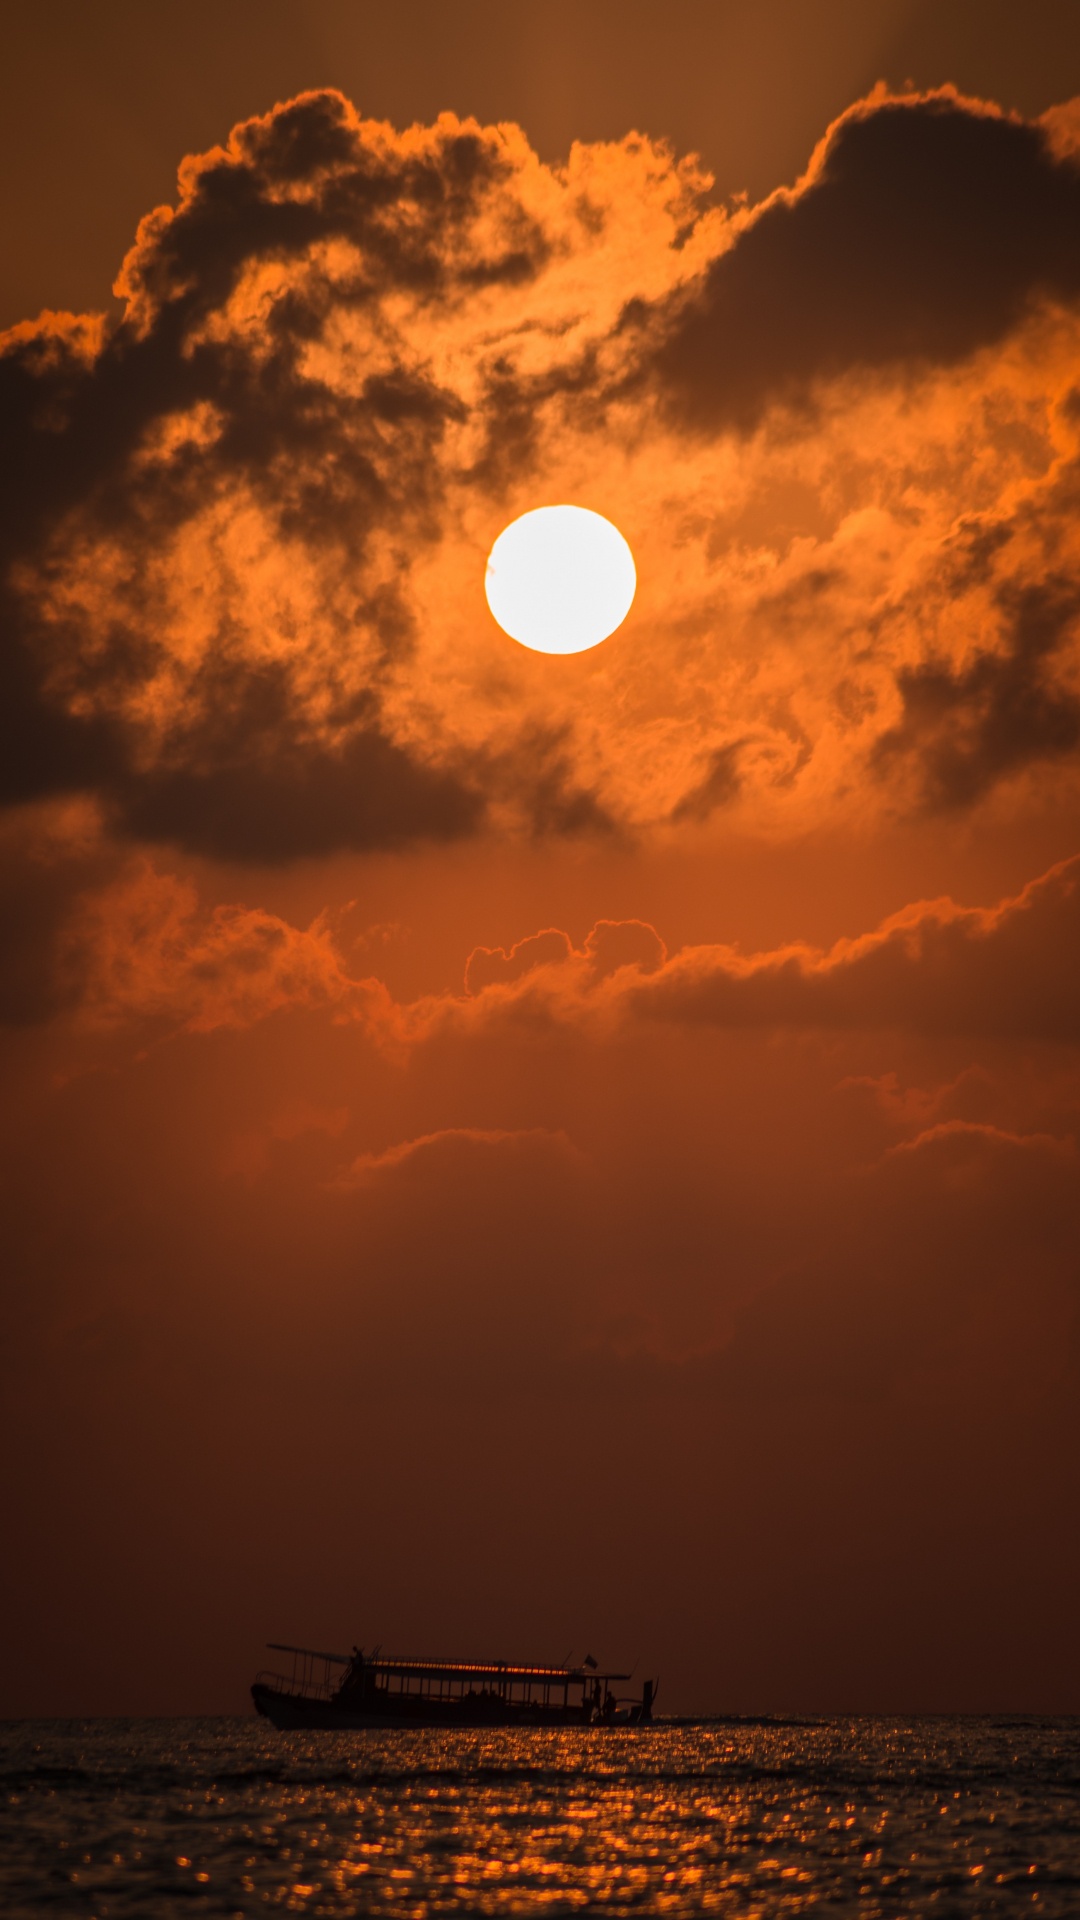 日落, 余辉, 太阳, 橙色, 黄昏 壁纸 1080x1920 允许